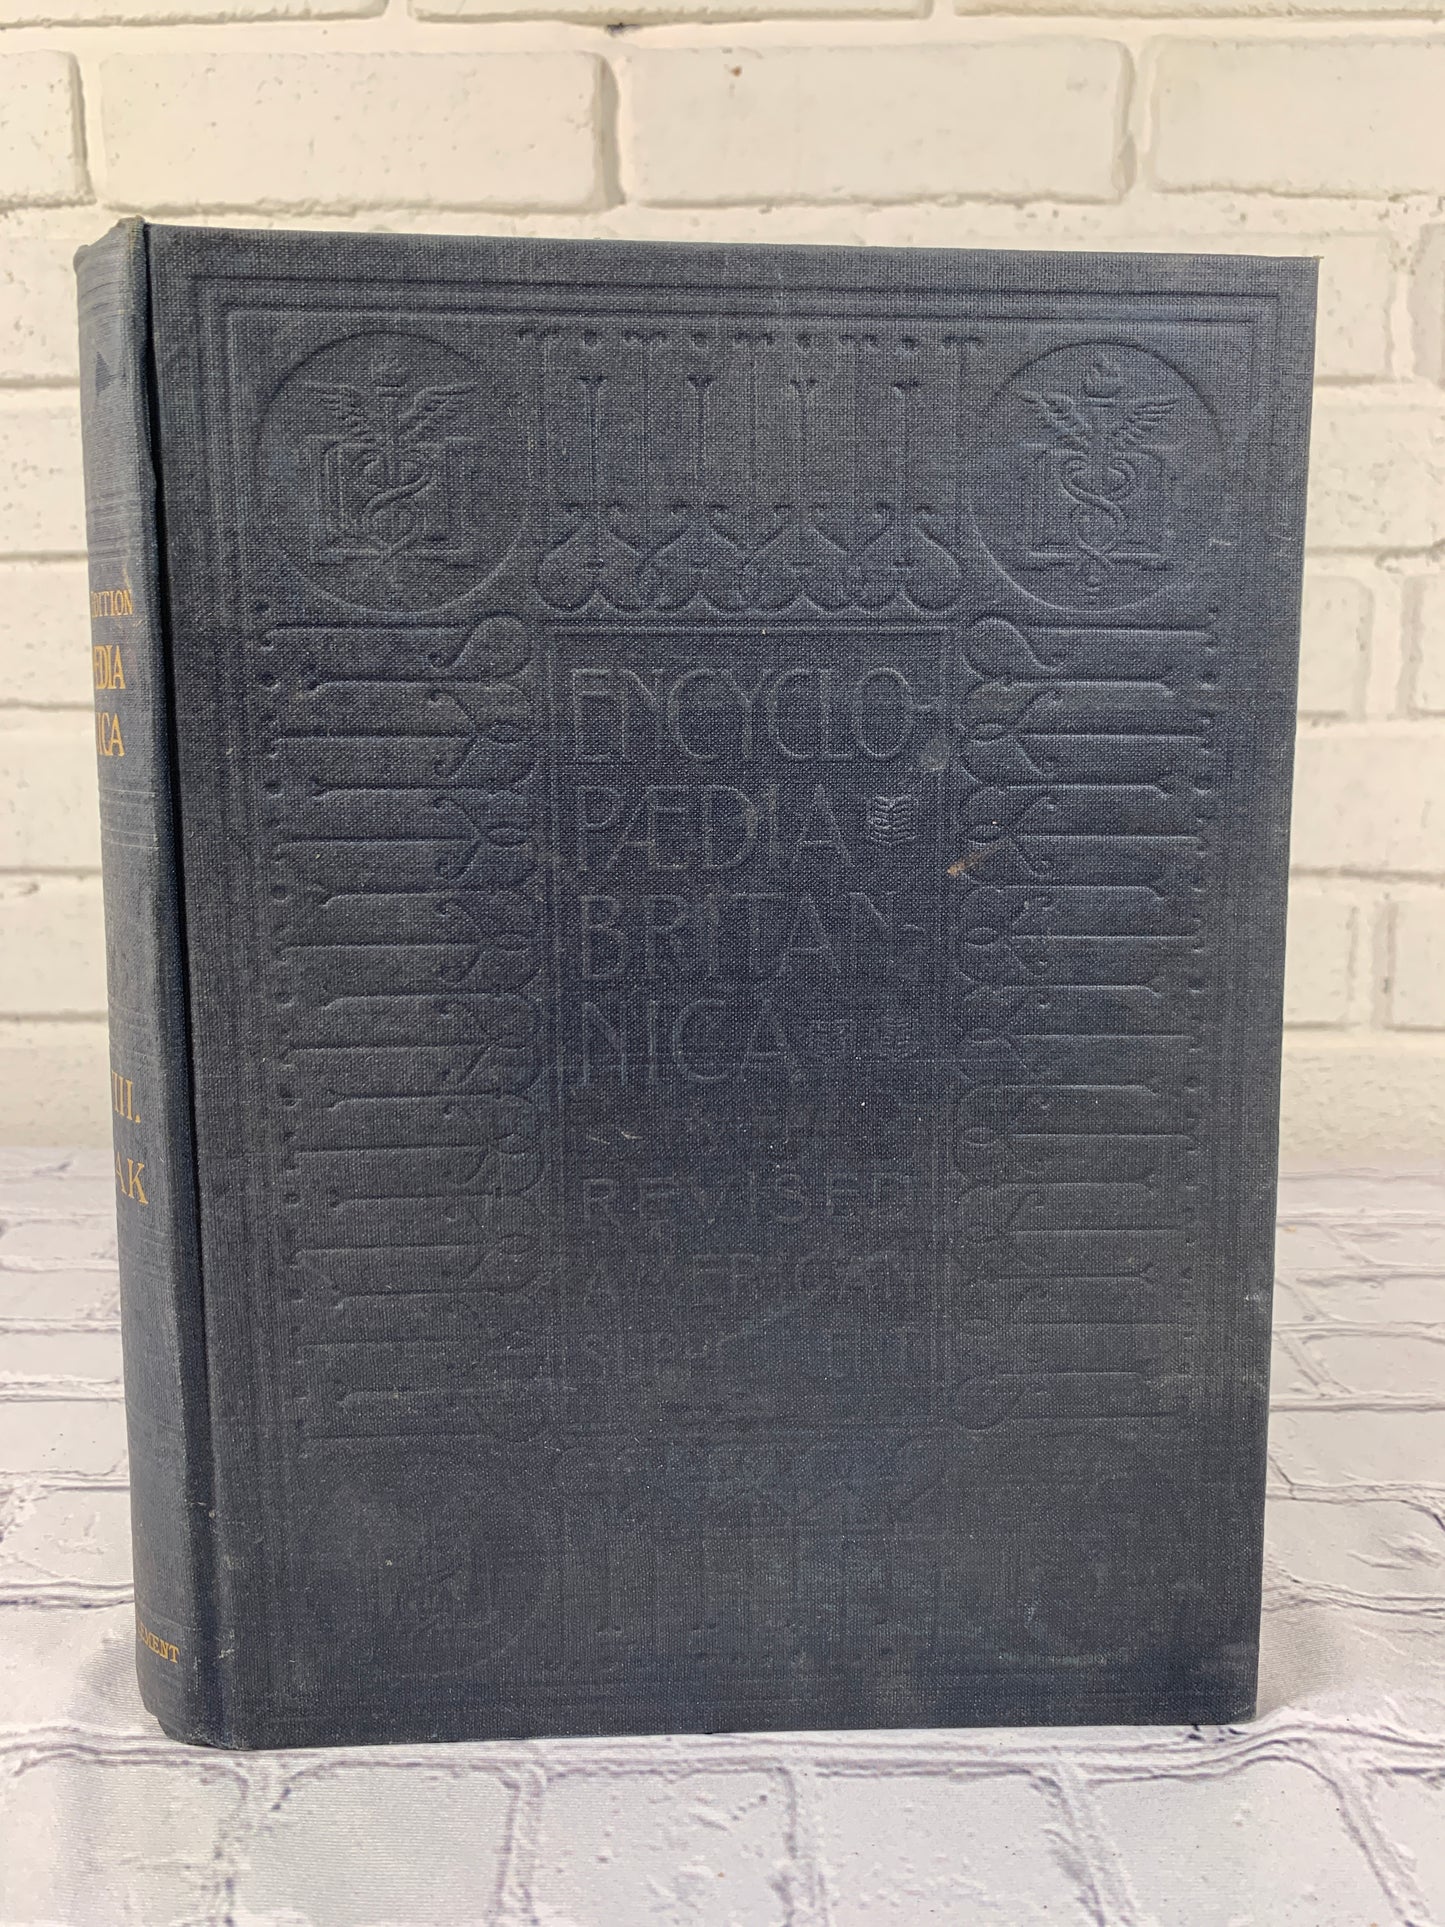 The Encyclopedia Britannica New Werner Edition Twentieth Century Vol VIII [1903]